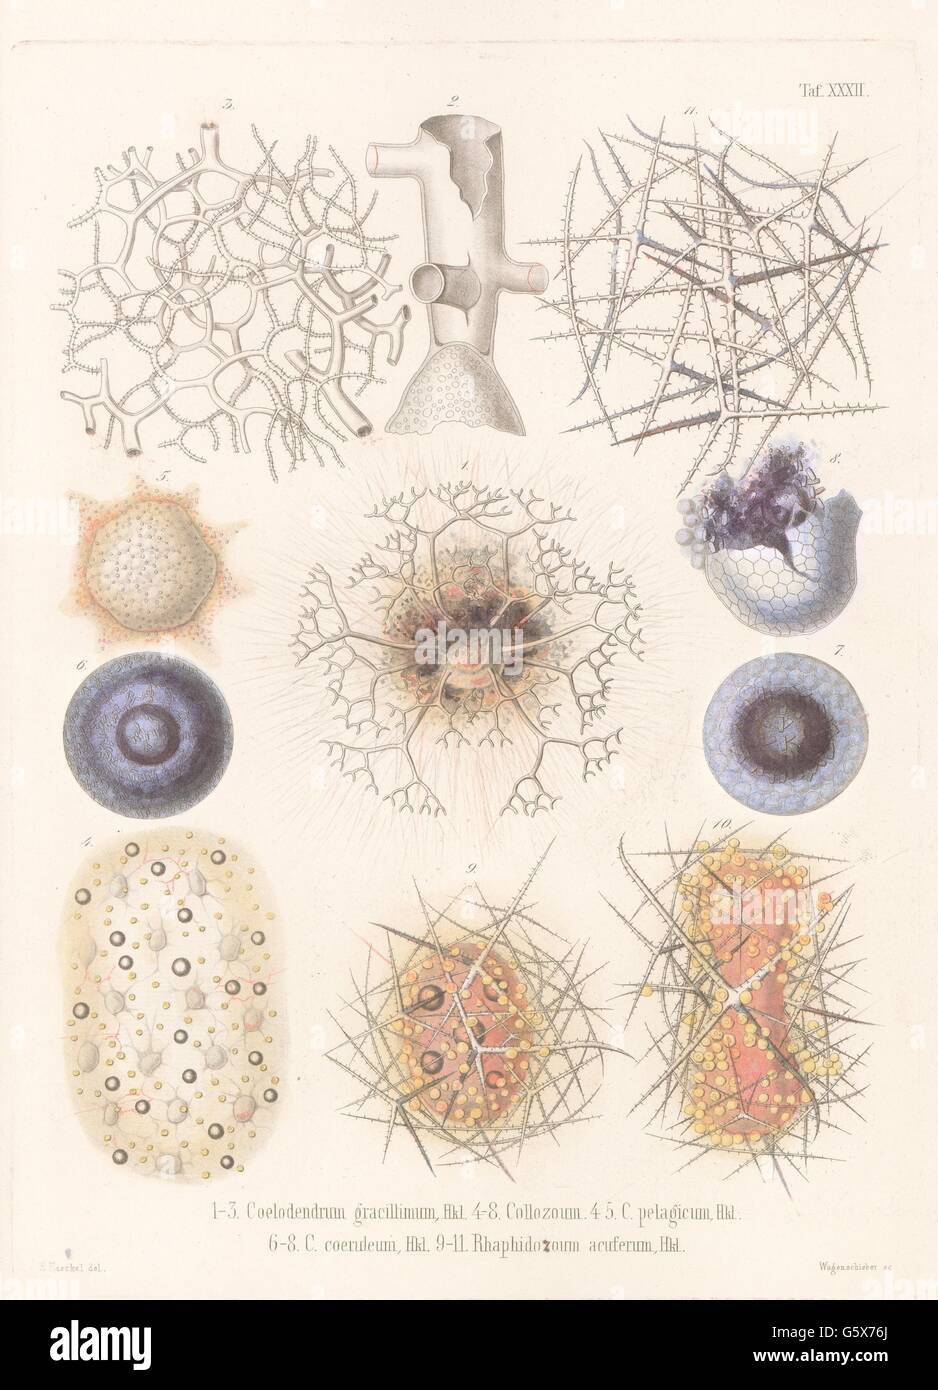 zoology / animals, radiolarian (Radiolaria), 1-3 Coelodendrum gracillimum, 4-5 Collozoum pelagicum, 6-8 Collozoum coeruleum, 9-11 Rhaphidozoum acuferum, colour lithograph, out of: Ernst Haeckel, 'Die Radiolarien (Rhizopeda radiata)', volume 2, Berlin, 1862, Additional-Rights-Clearences-Not Available Stock Photo